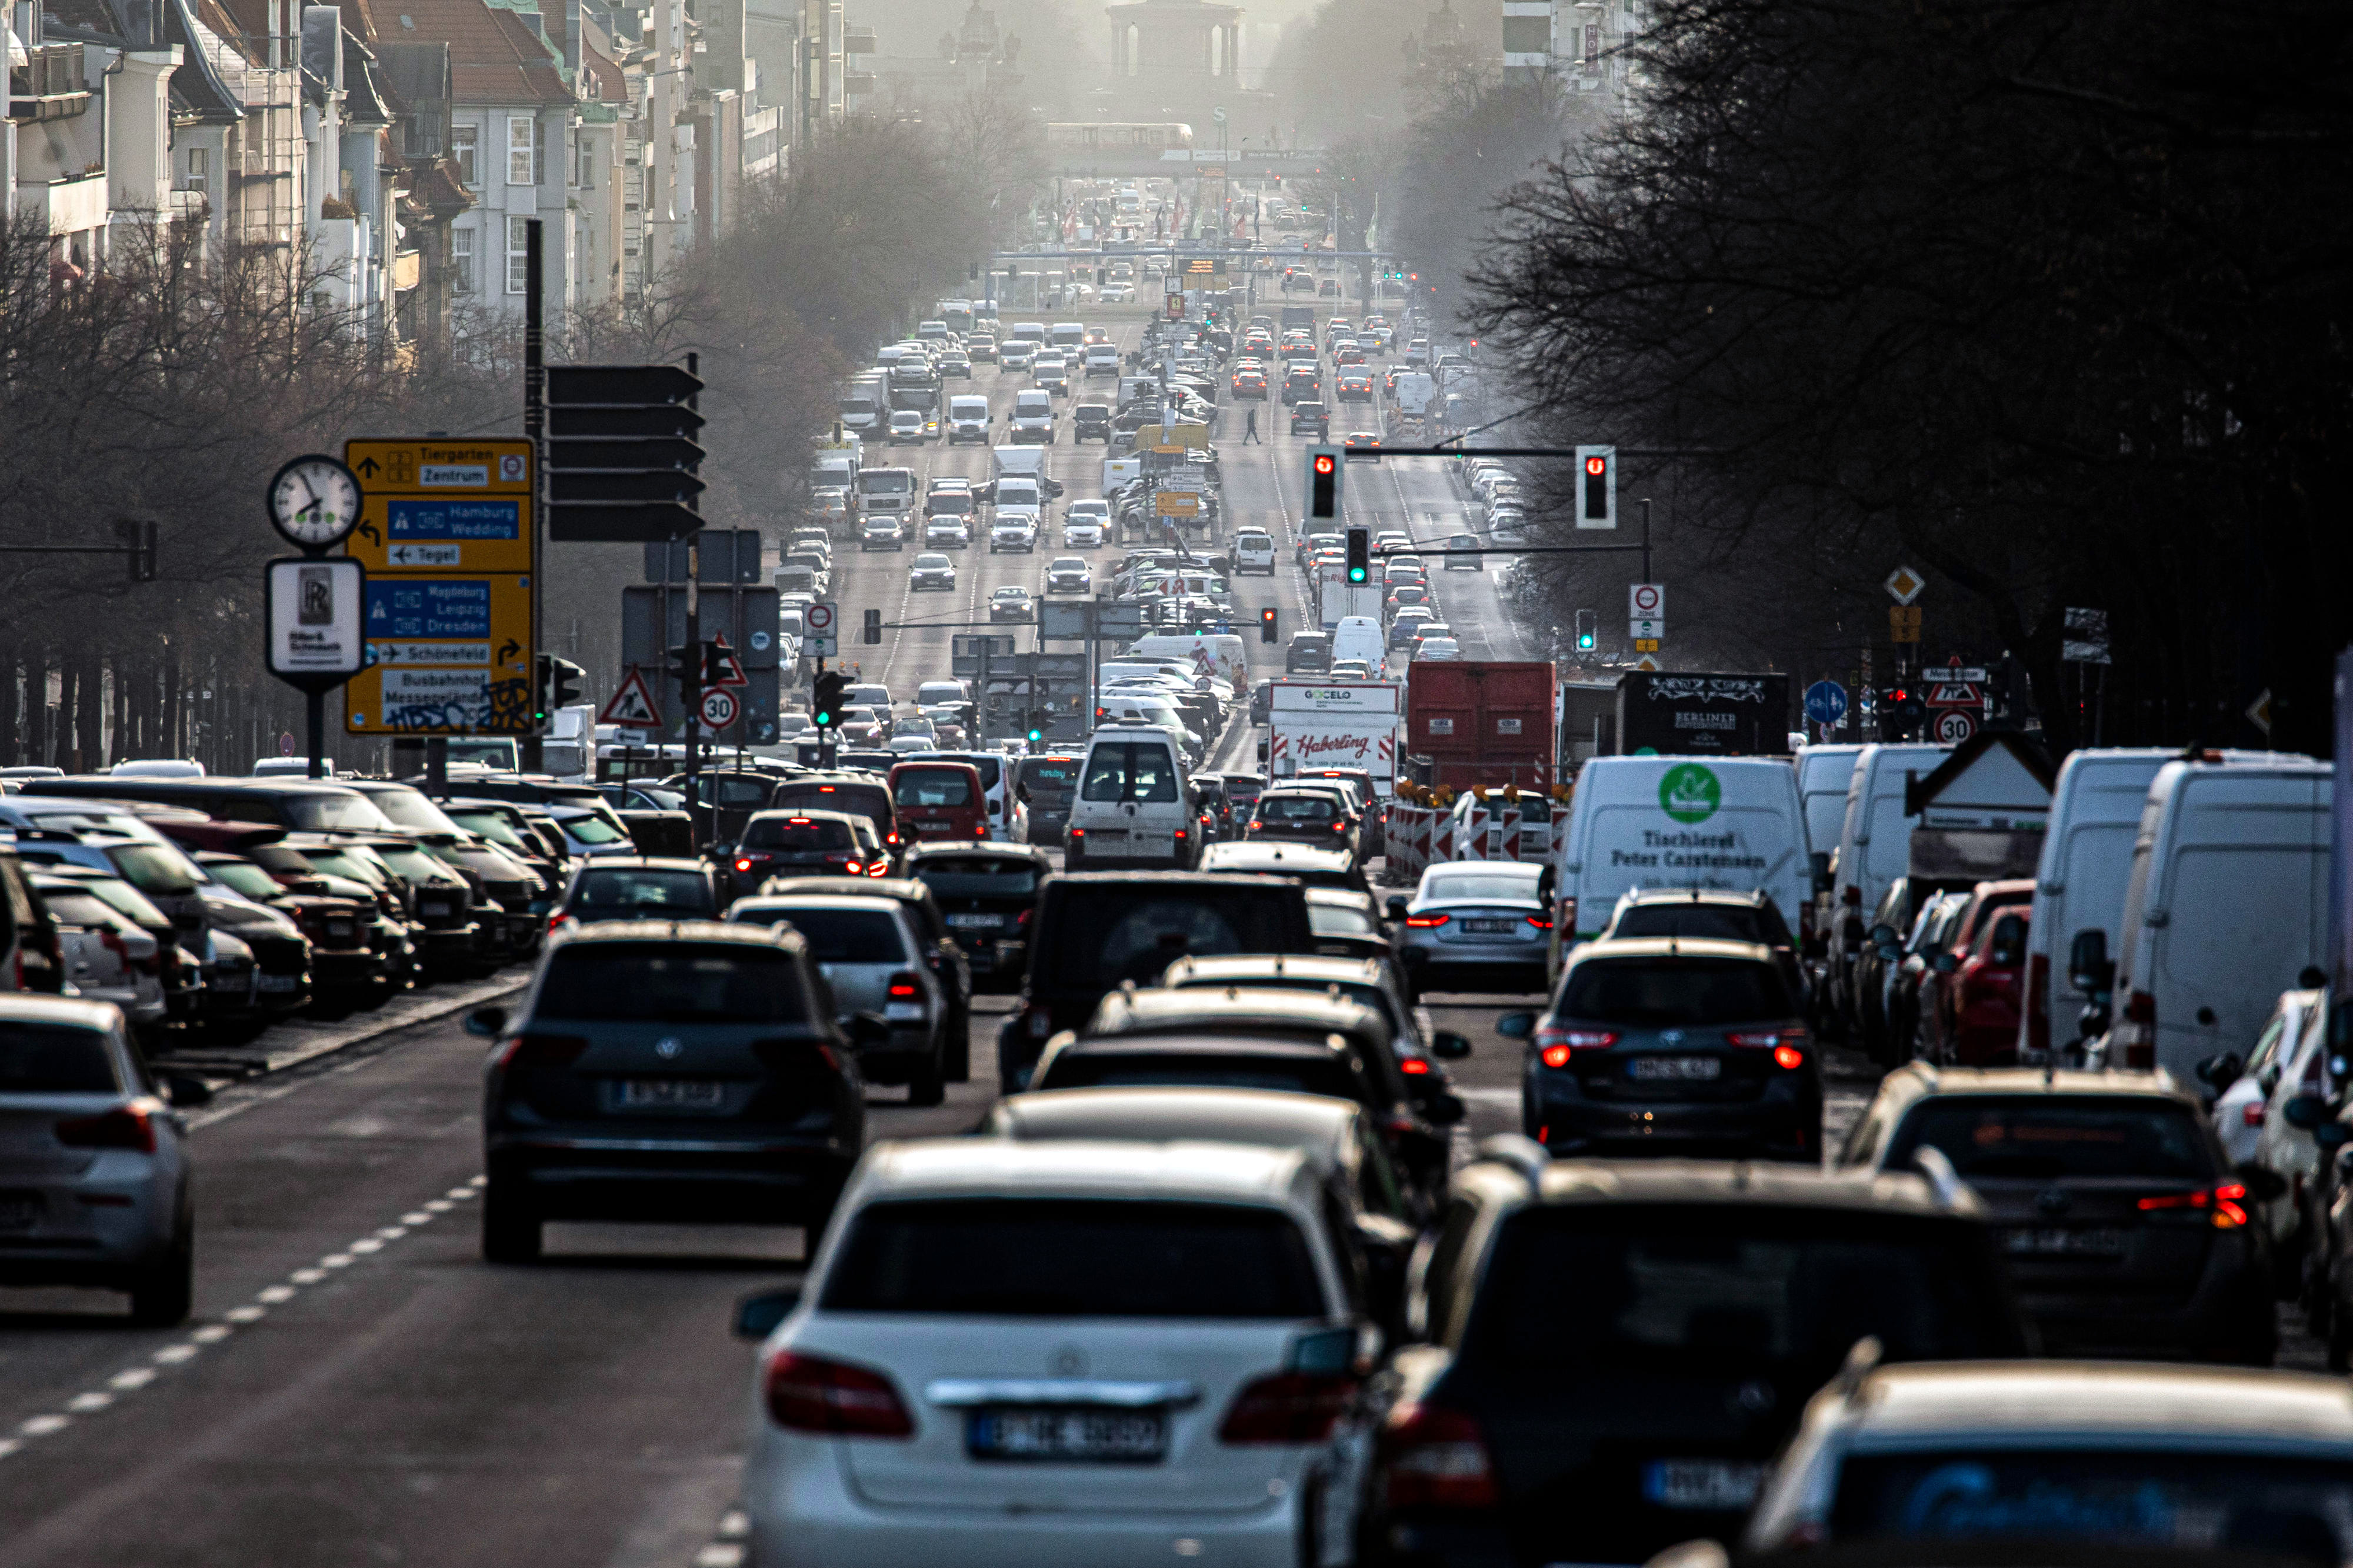 Straßenverkehr in Berlin, zahlreiche Autos fahren dicht gedrängt auf einer mehrspurigen Straße